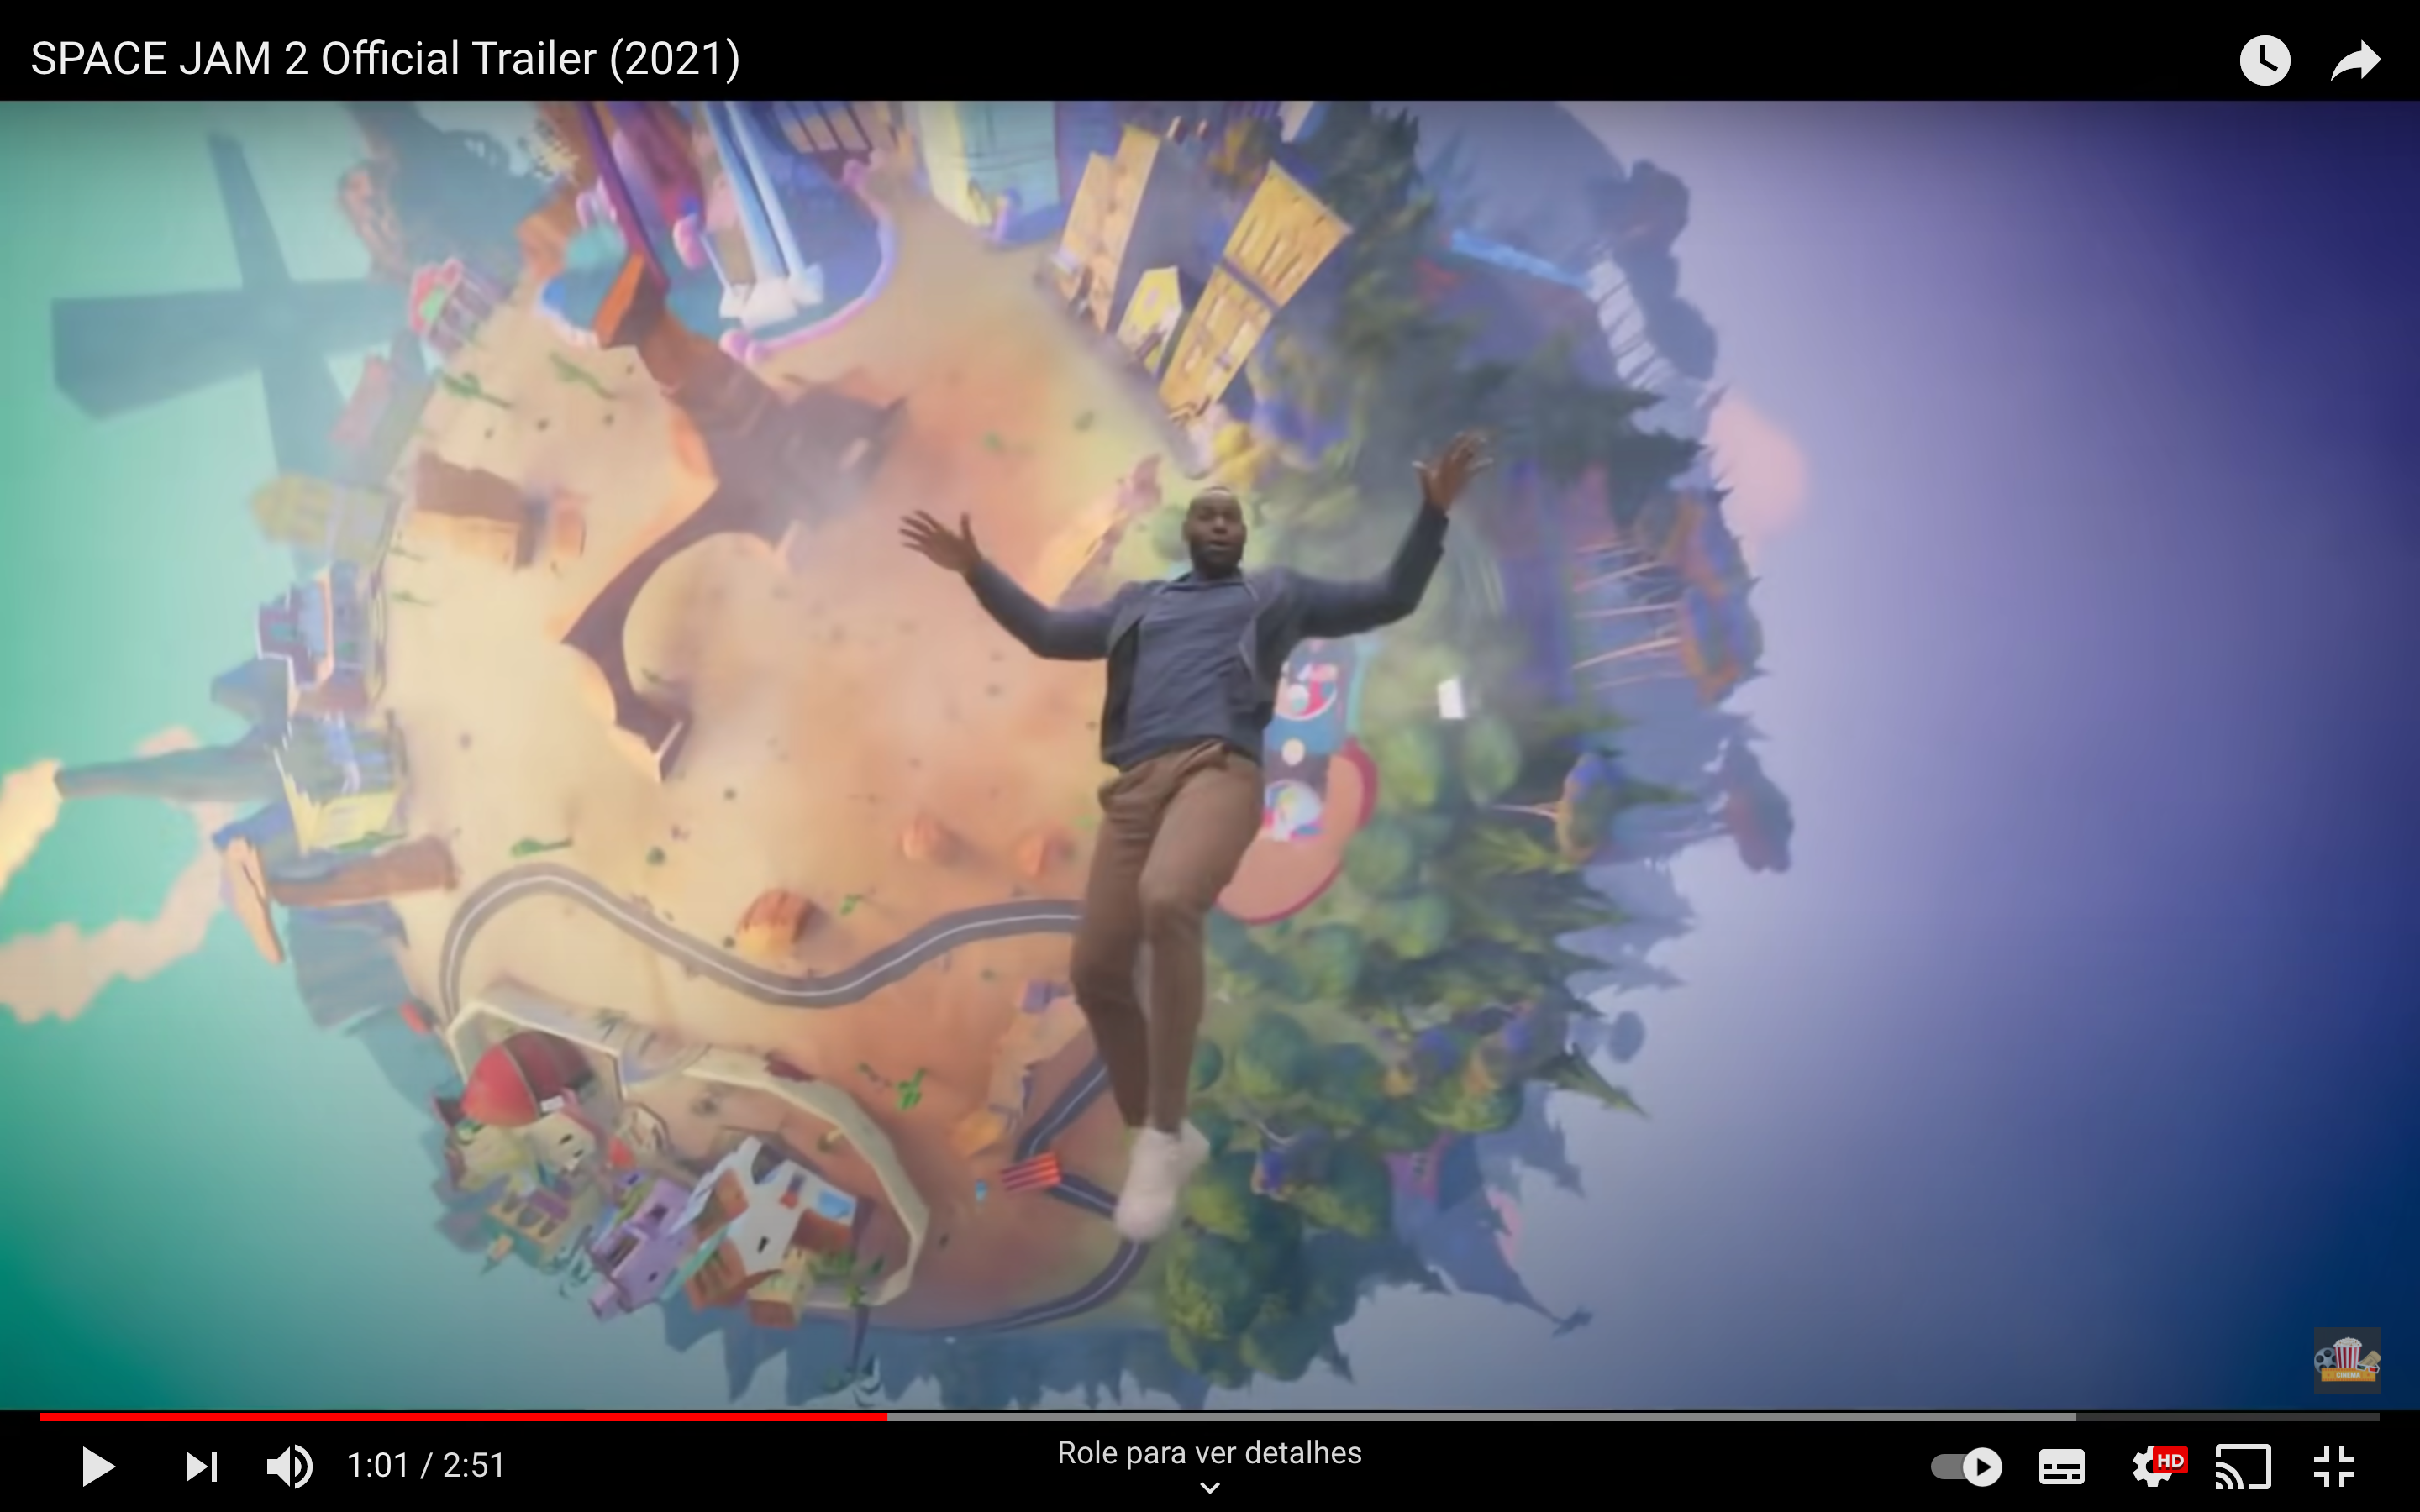 LeBron James vira desenho animado no primeiro trailer do novo